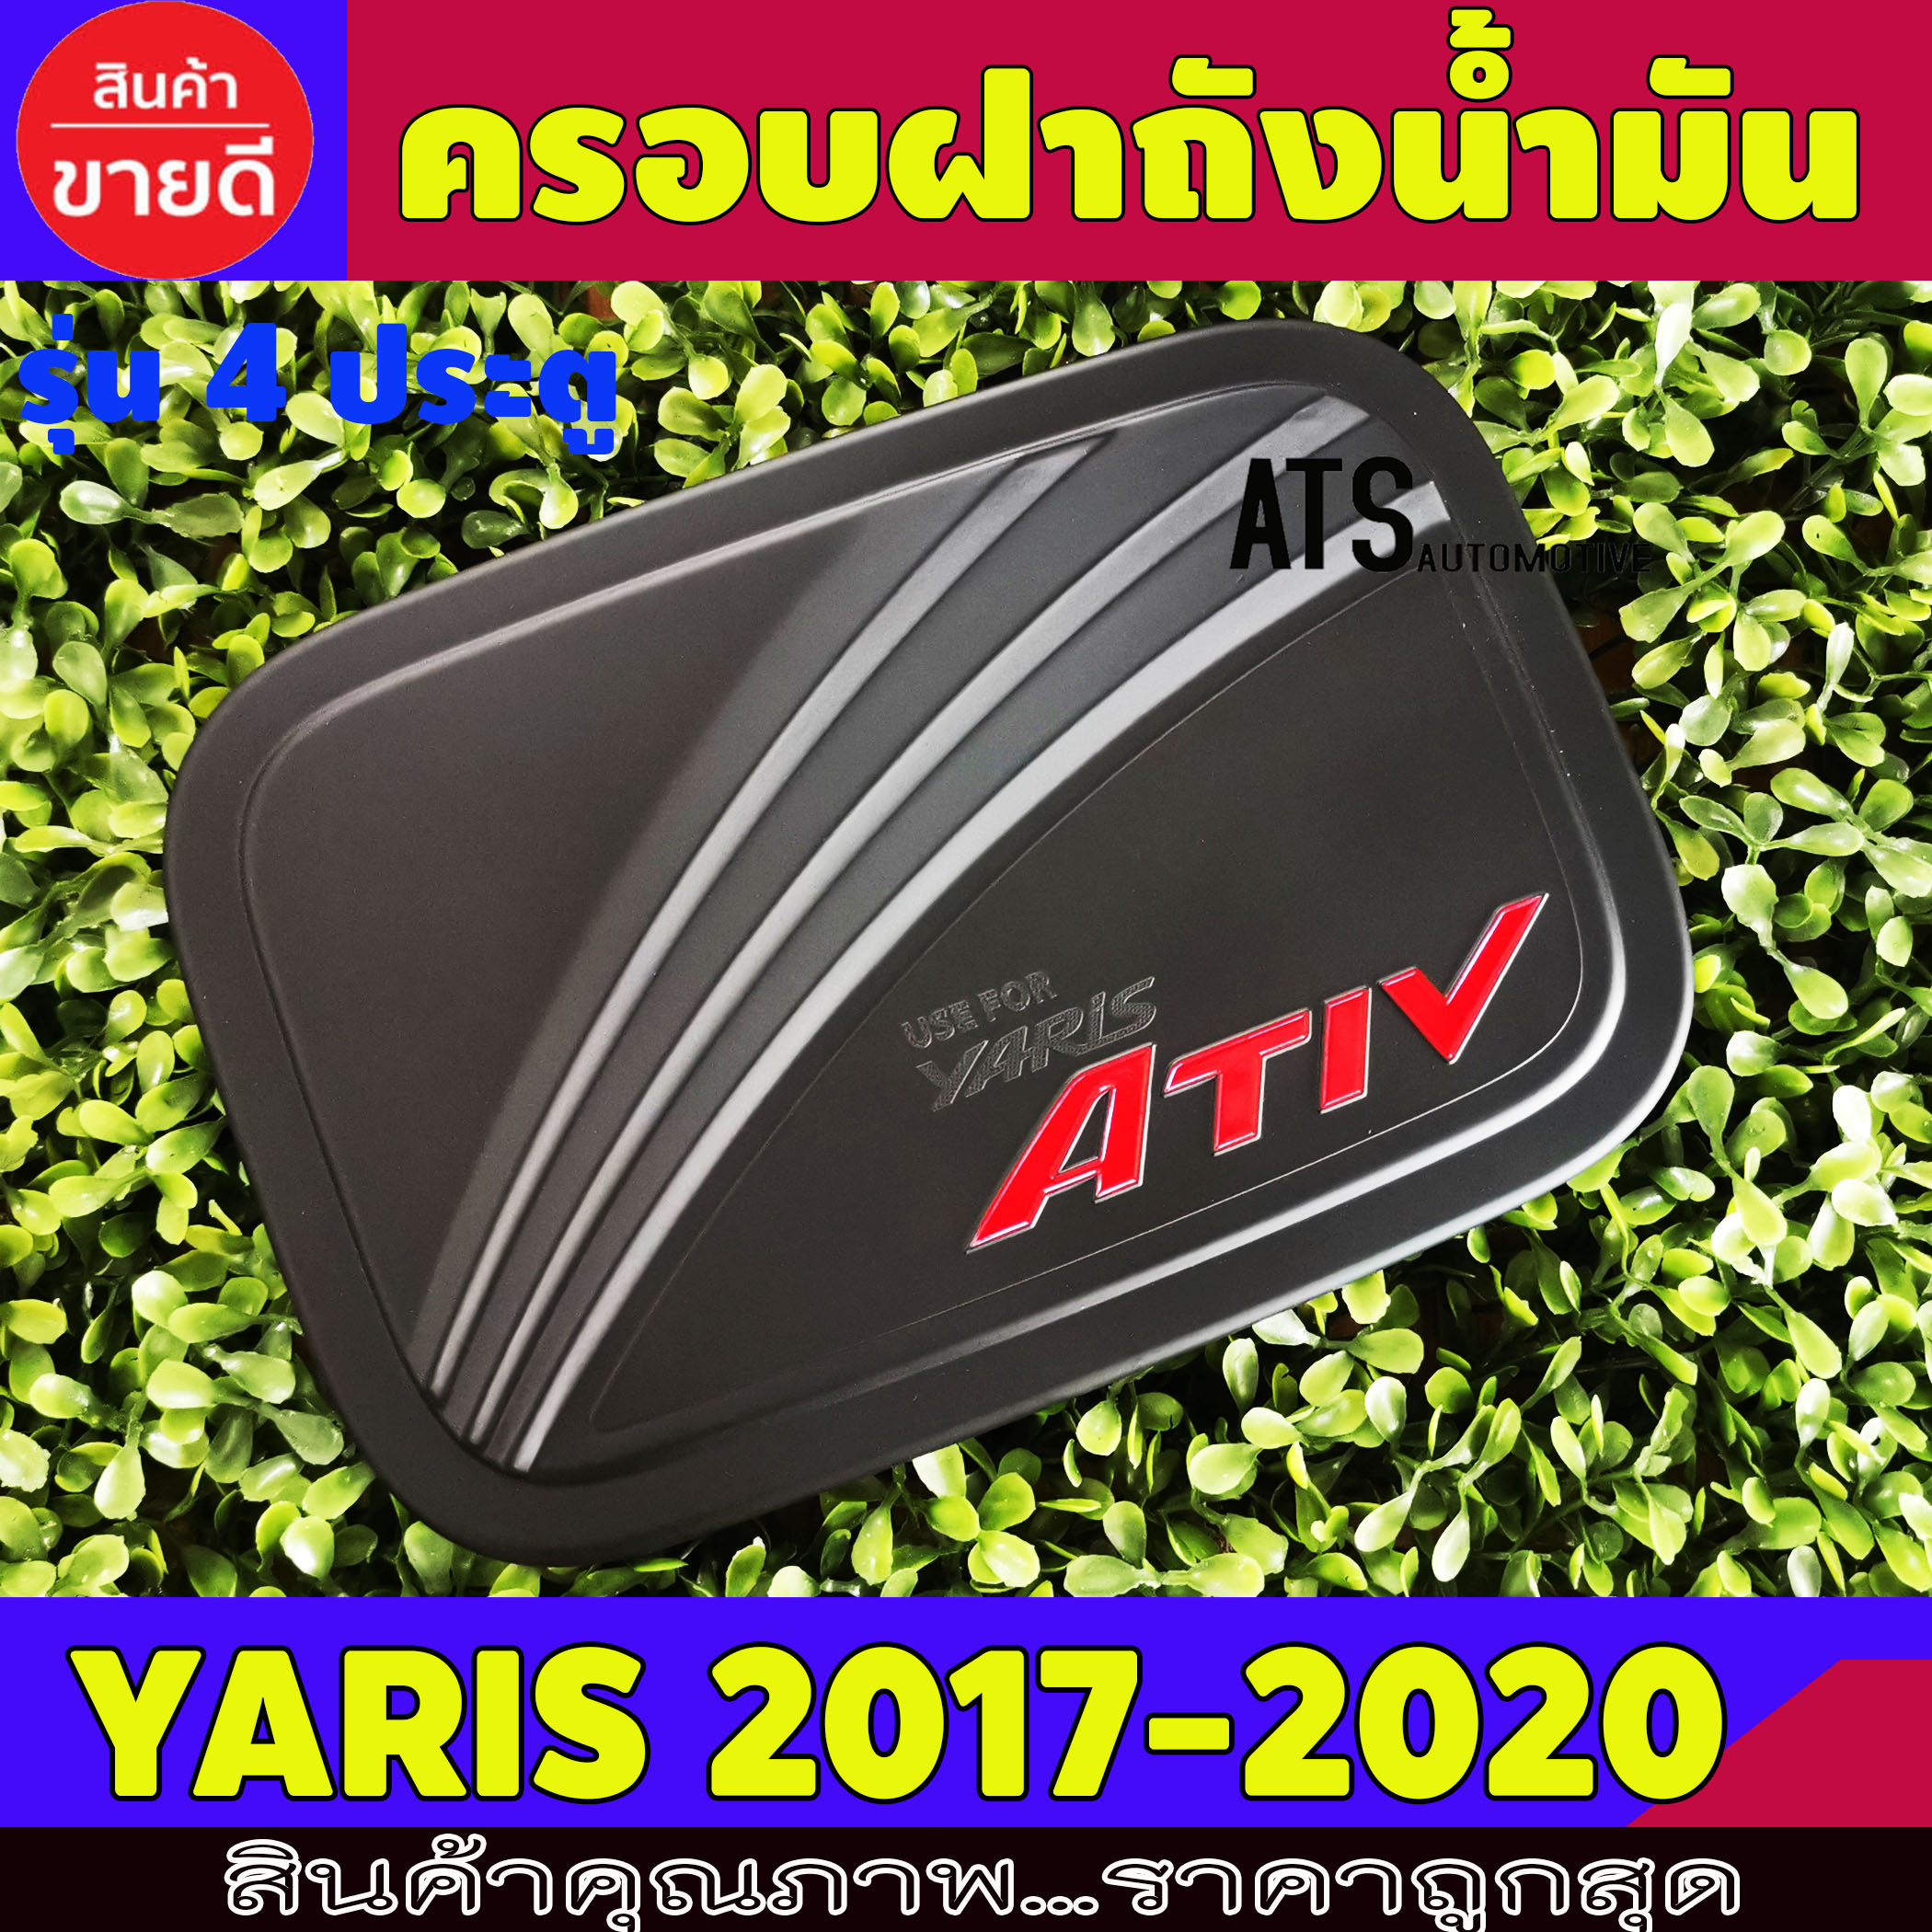 ครอบฝาถังน้ำมัน ดำด้าน+โลโก้แดง รุ่น 4 ประตู โตโยต้า ยาริส เอทีฟ Toyota Yaris Ativ 2017 2018 2019 2020 S